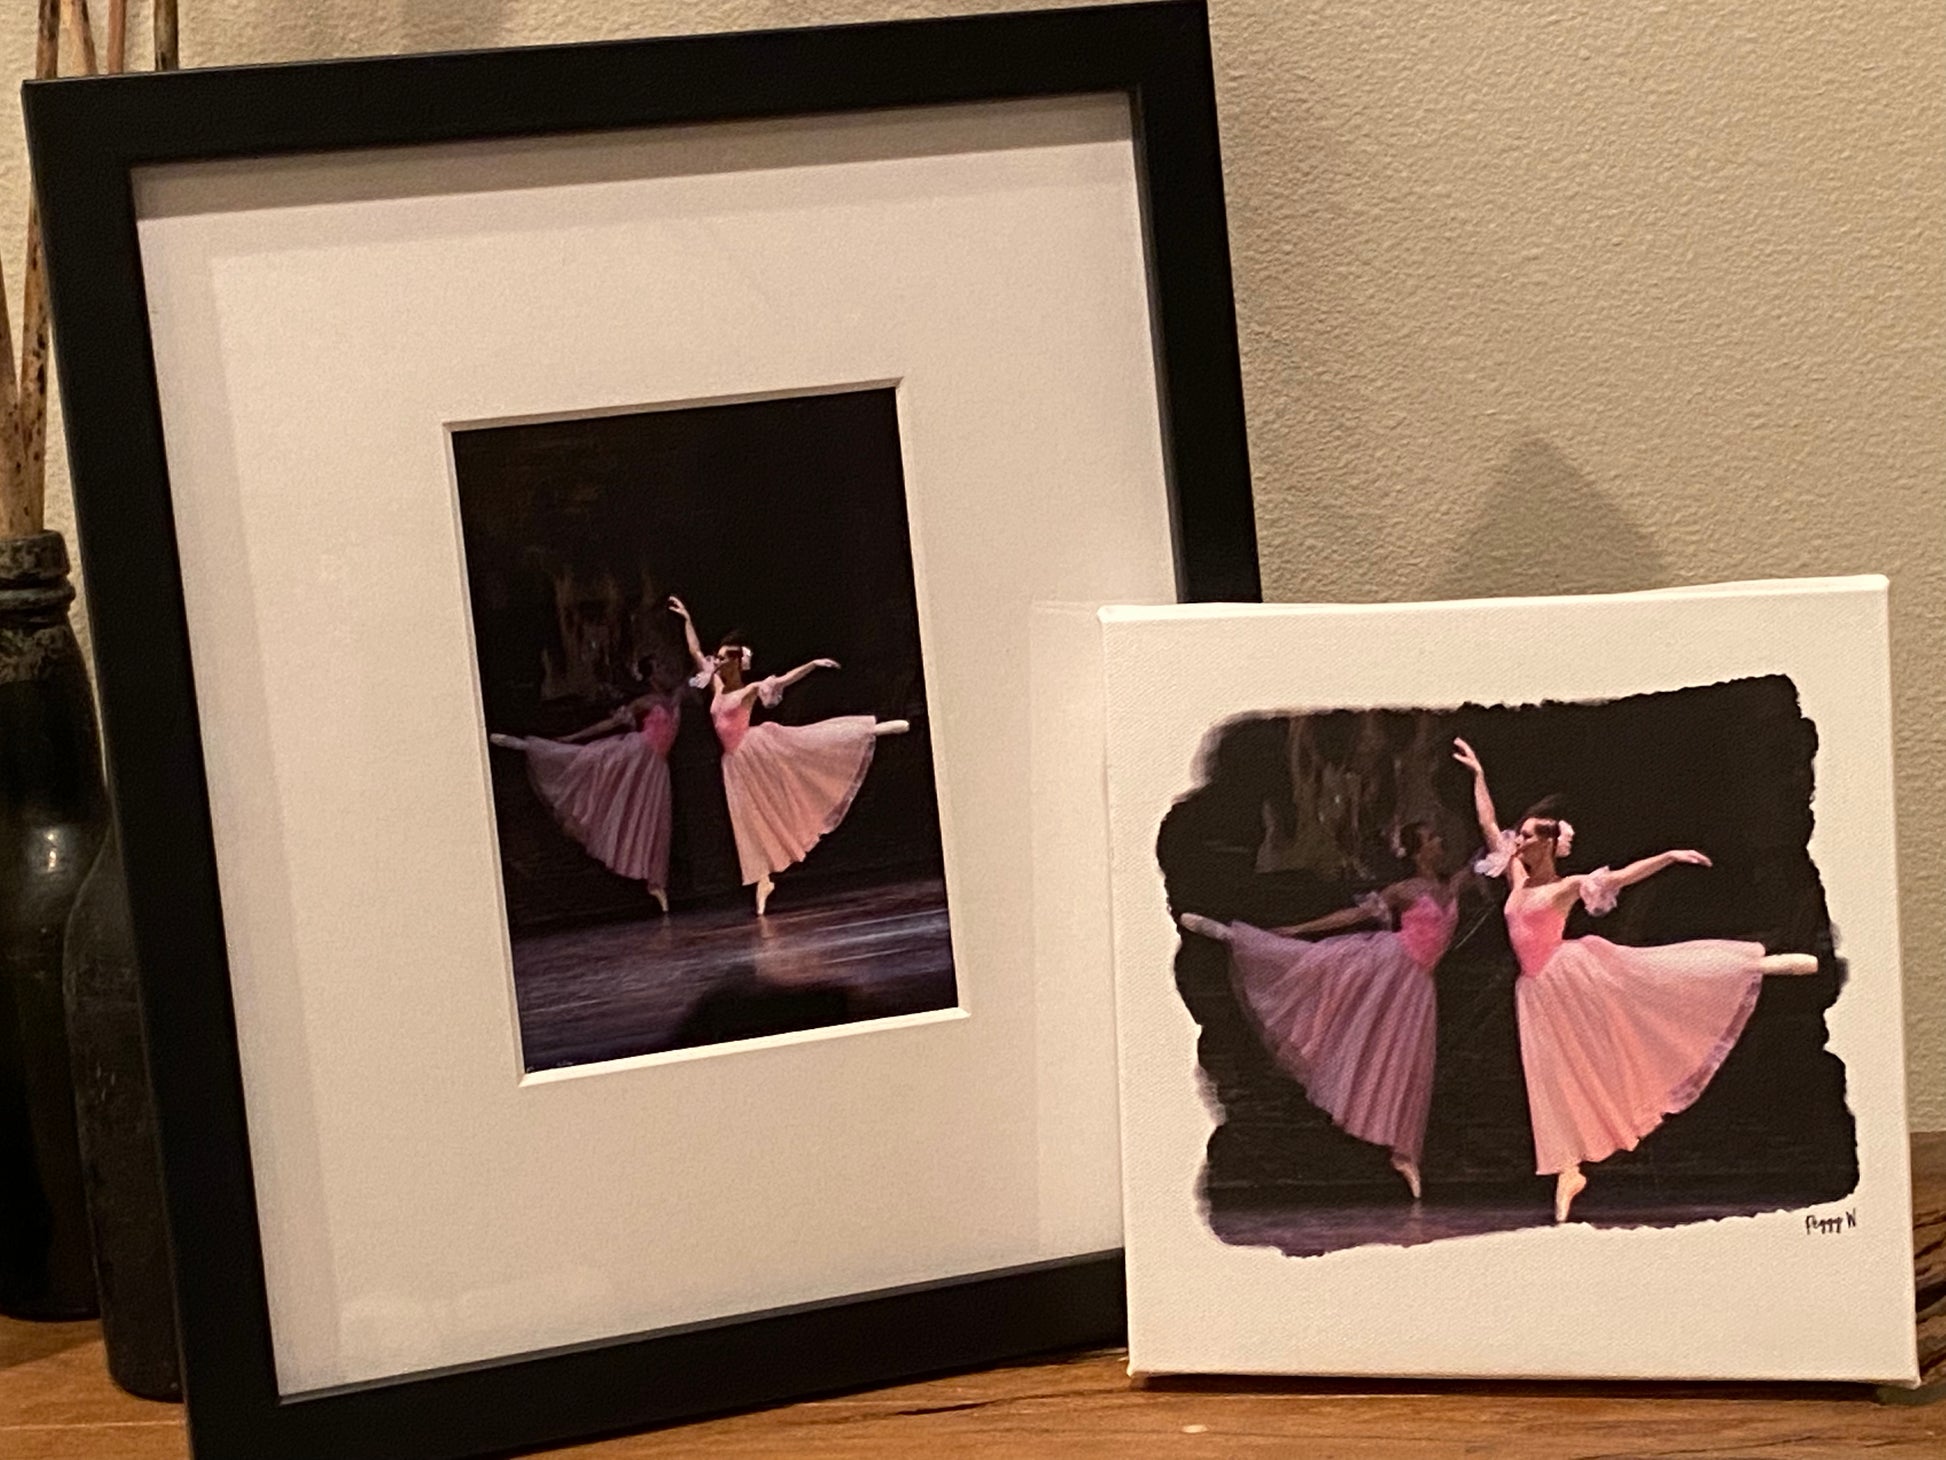 Pink Ballerina Digital Clip Art, Ballet Dancer Girls – Tracy